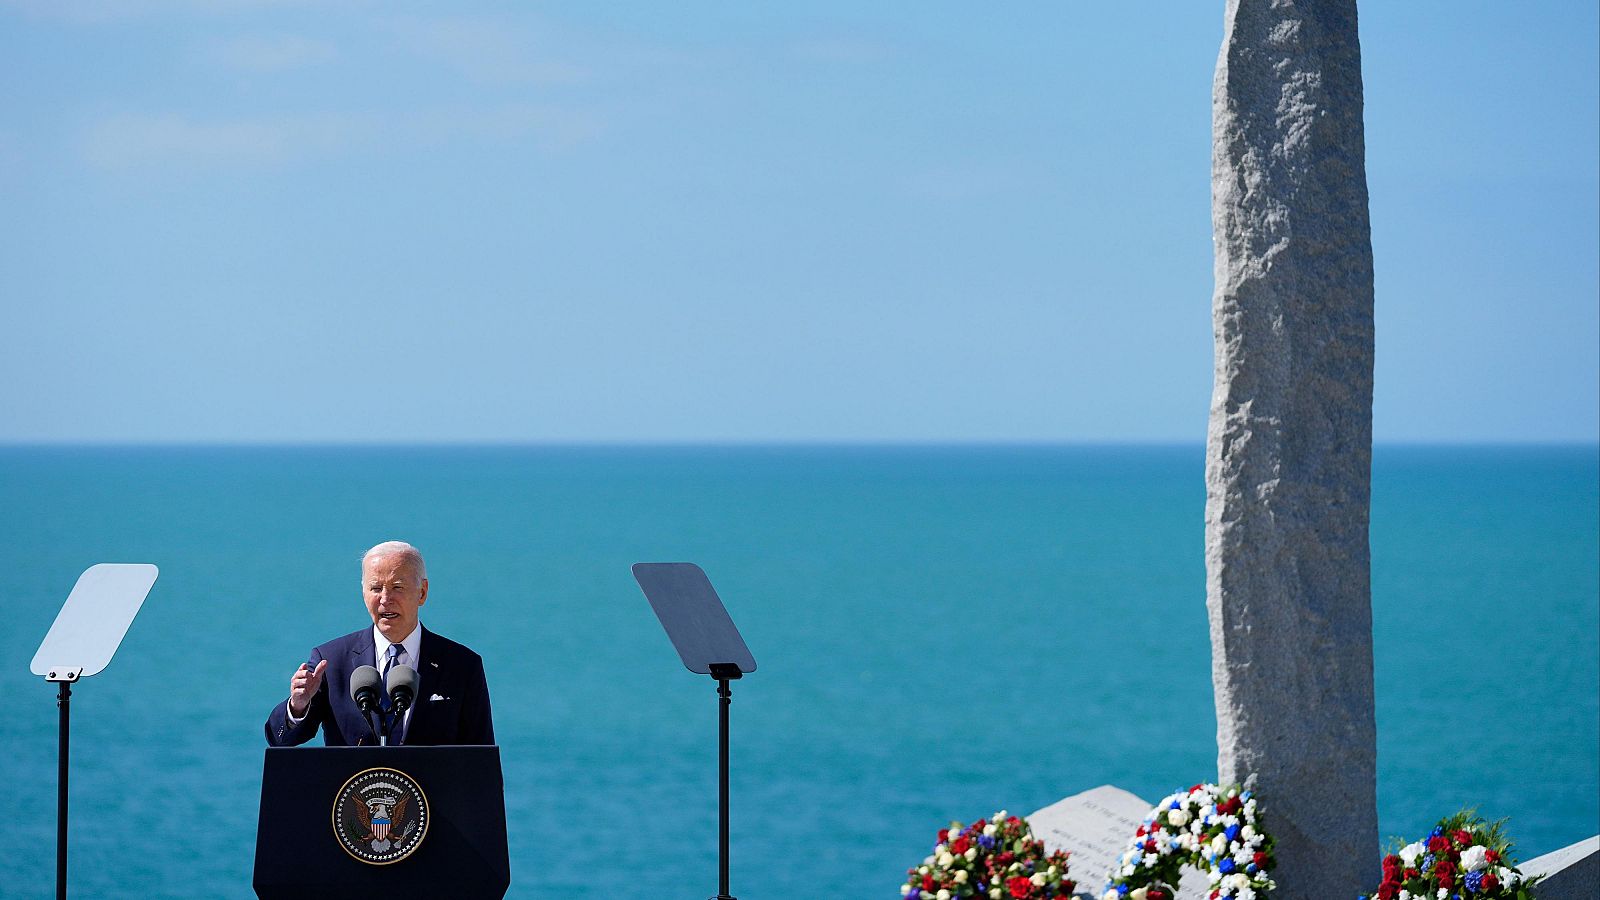 Biden vincula el heroísmo de Normandía con la necesidad de frenar a Putin en Europa